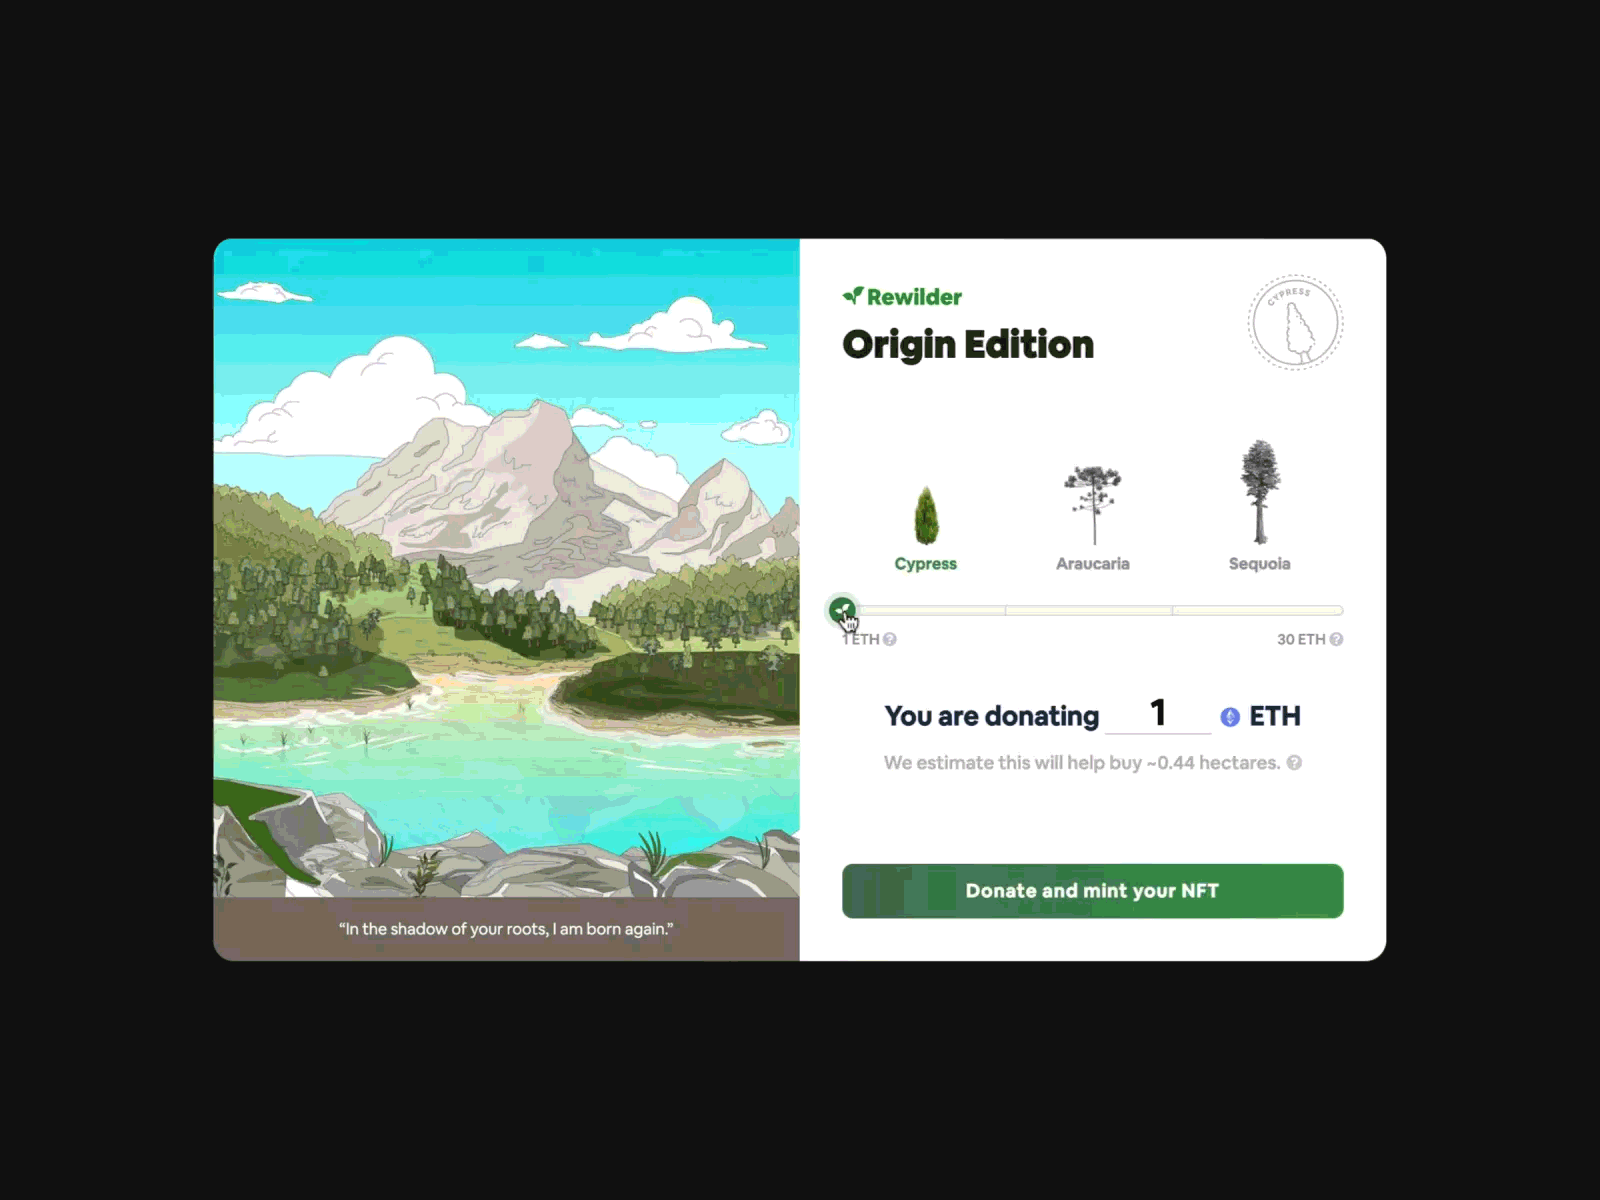 Rewilder donation app